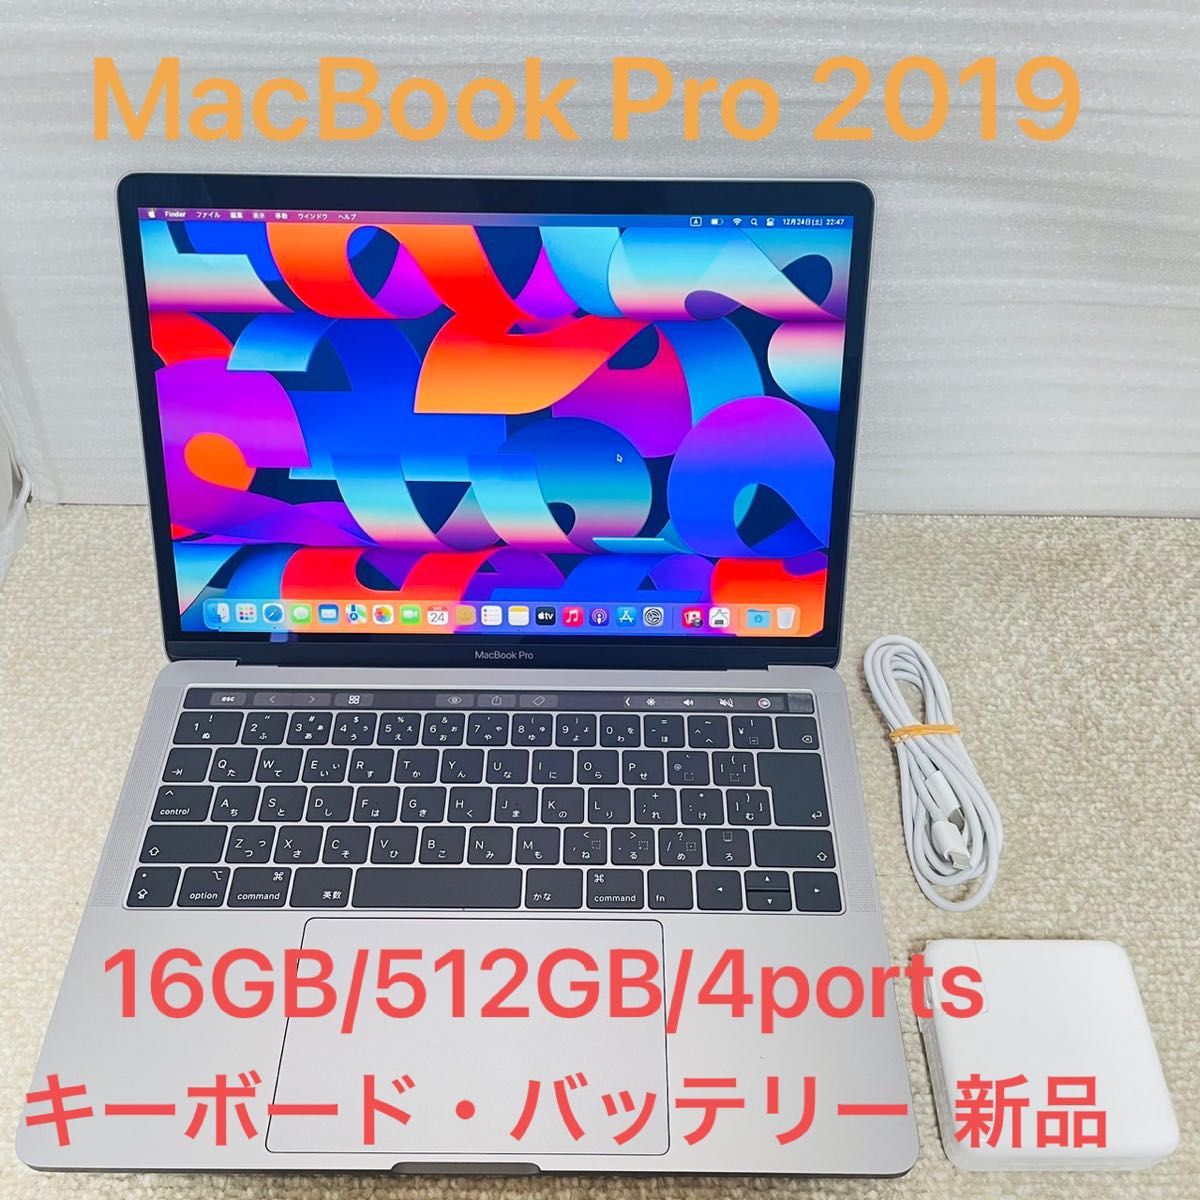 MacBook Pro 2019 CTO 512GB/16GB 上位モデル キーボード・バッテリー